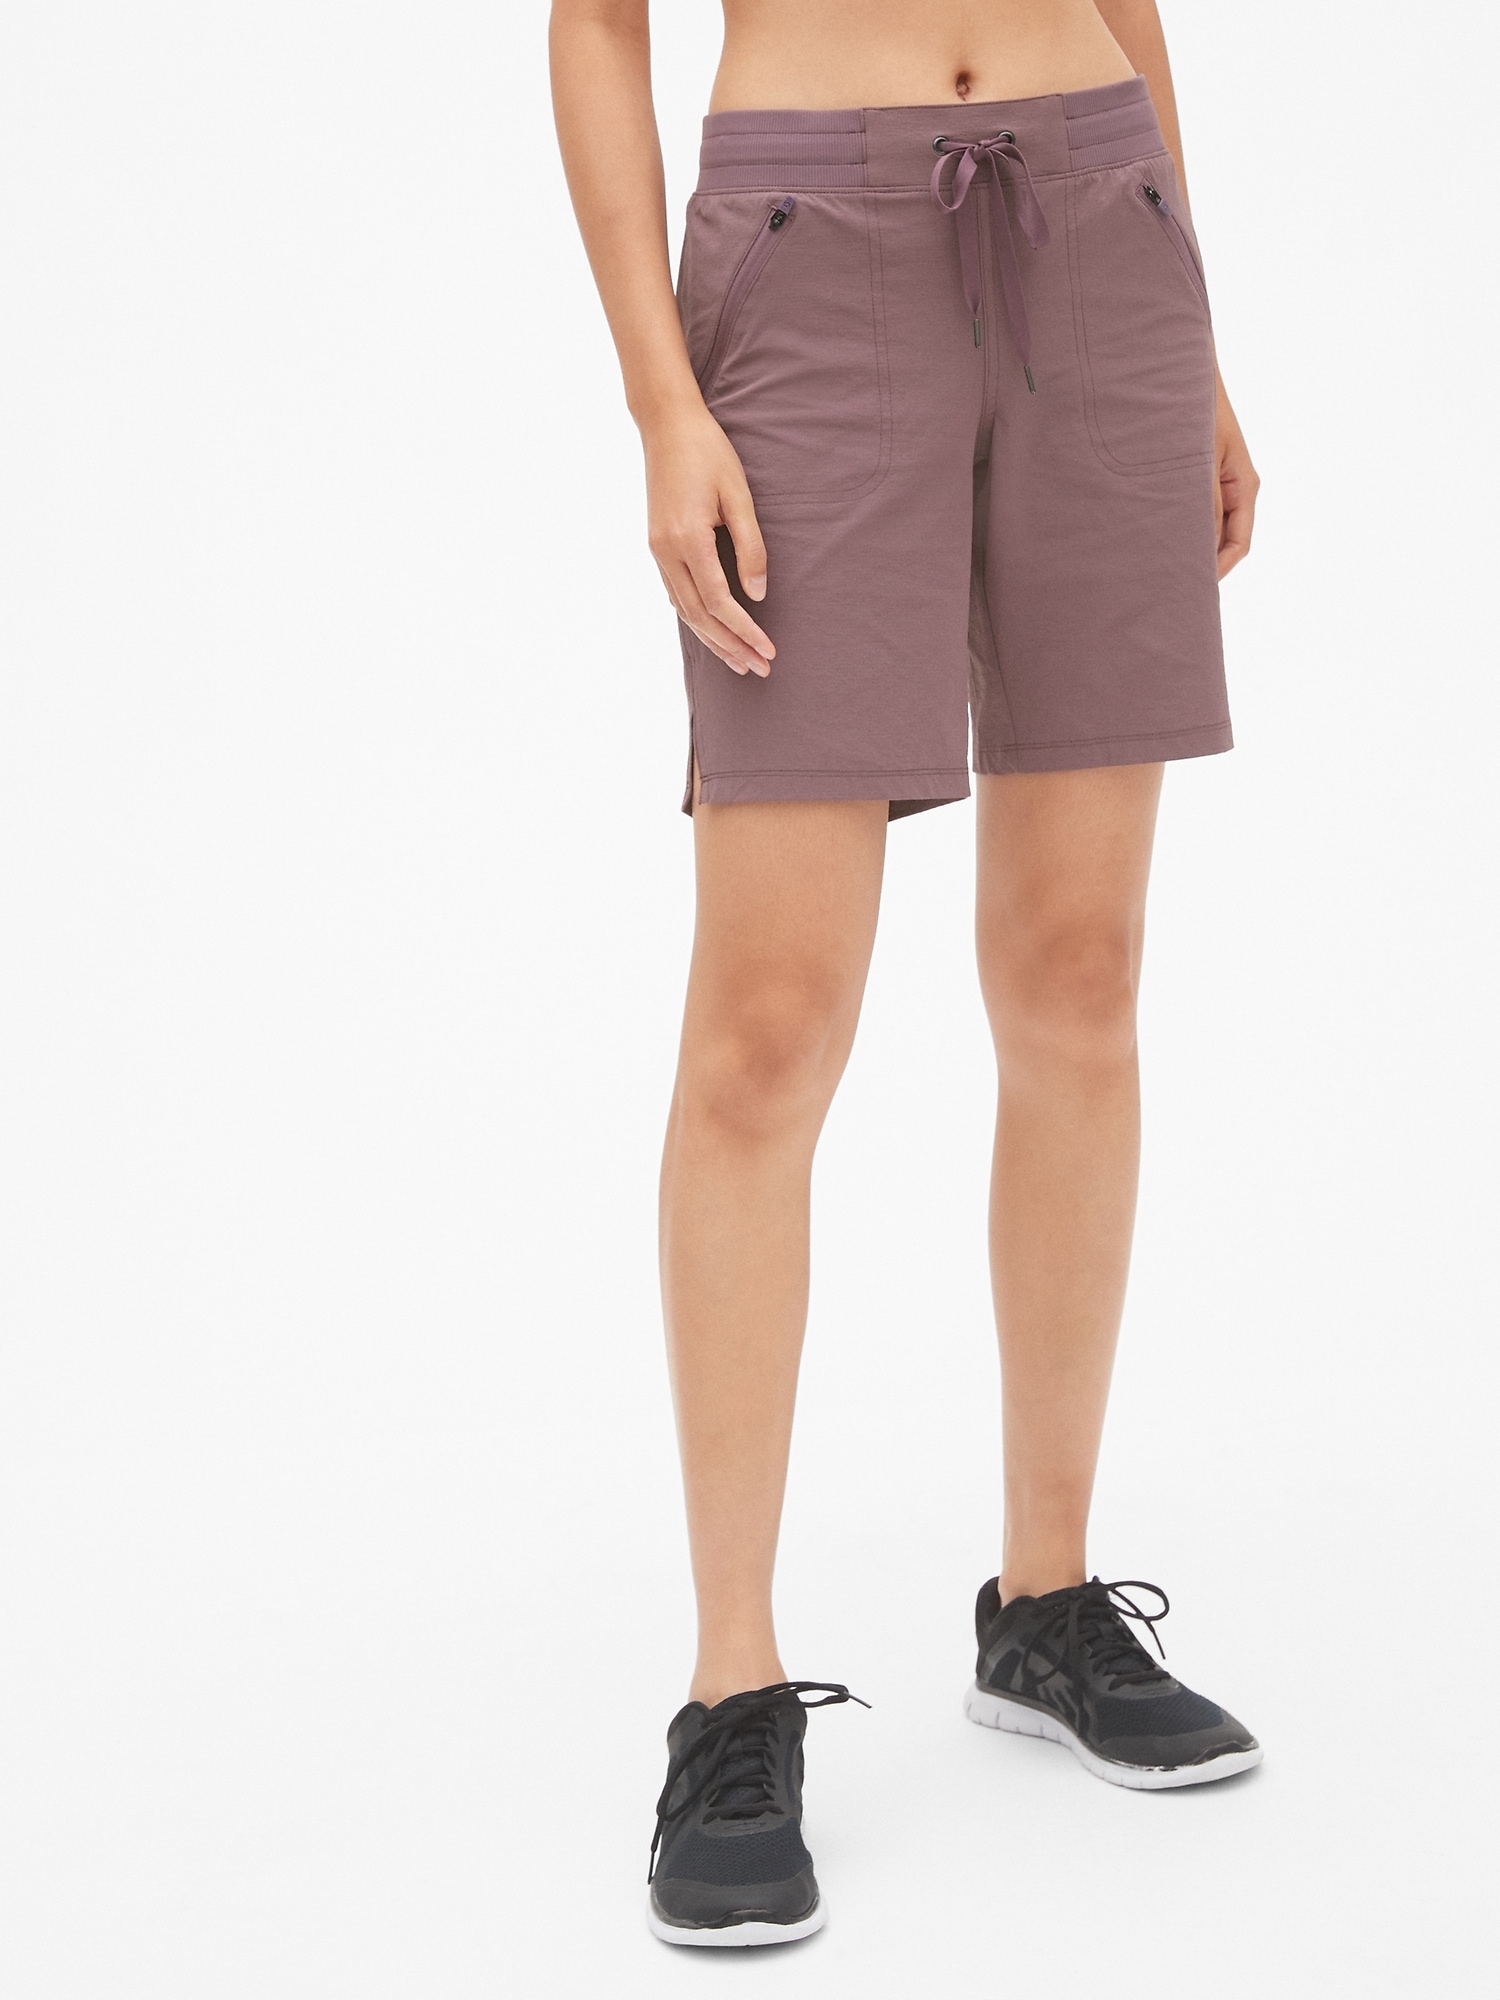 gapfit hiking shorts